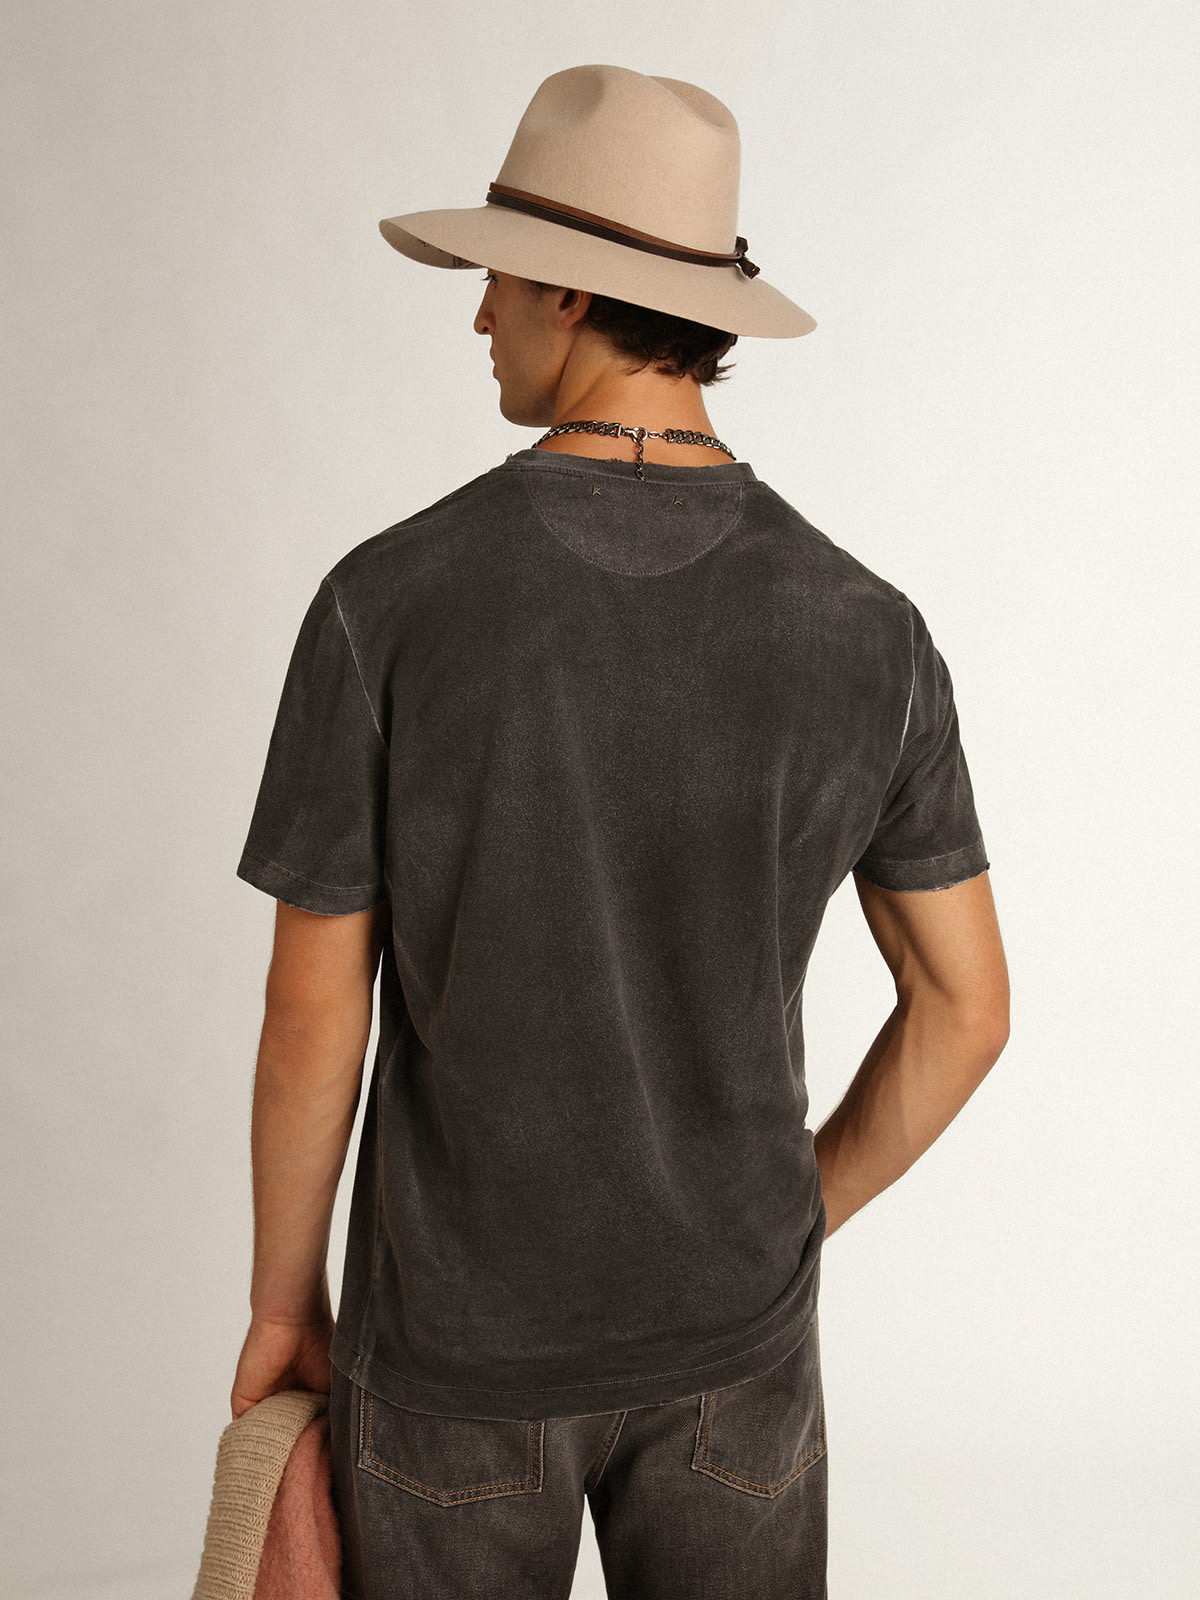 Golden Goose - T-shirt gris collection Journey à l’effet vieilli avec imprimé couleur seagrass contrasté sur le devant et déchirures réalisées à la main sur les bords in 